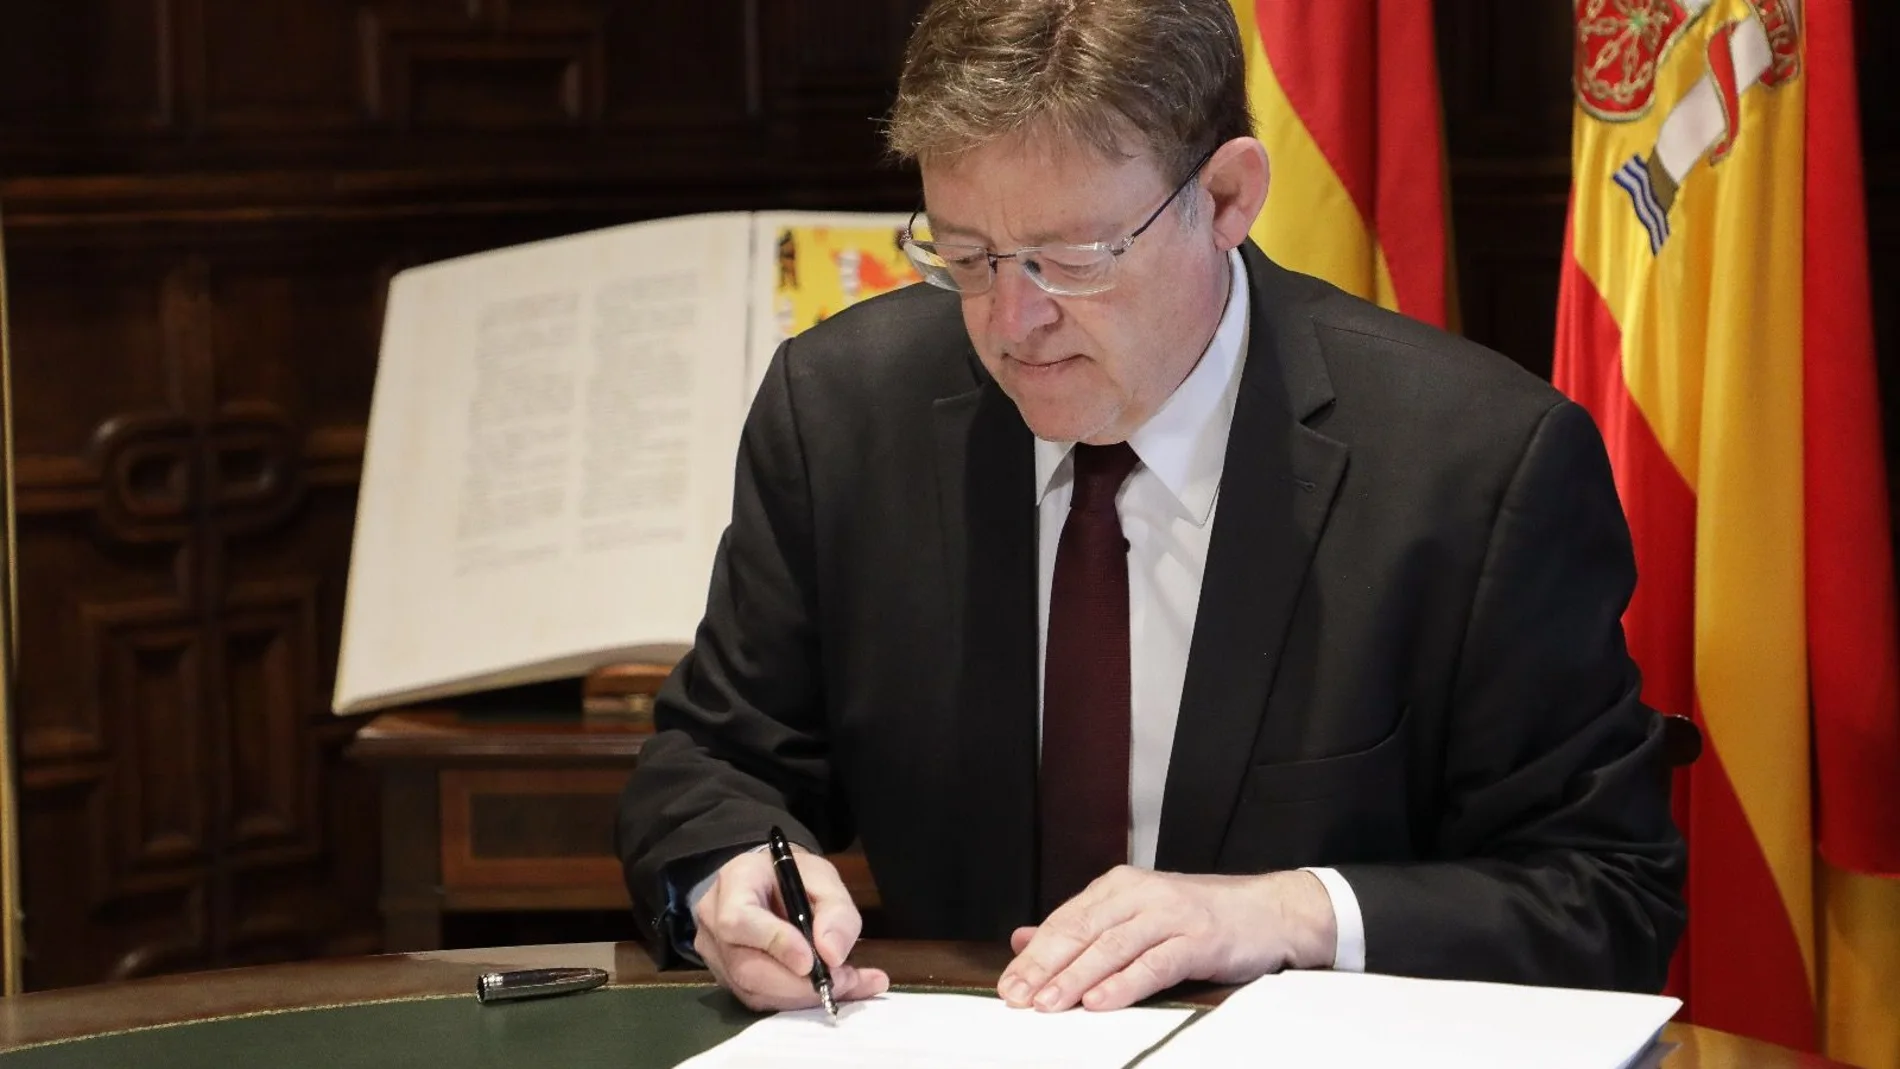 El presidente de la Generalitat ha firmado hoy el decreto que regulará la fase 3 en la Comunitat Valenciana